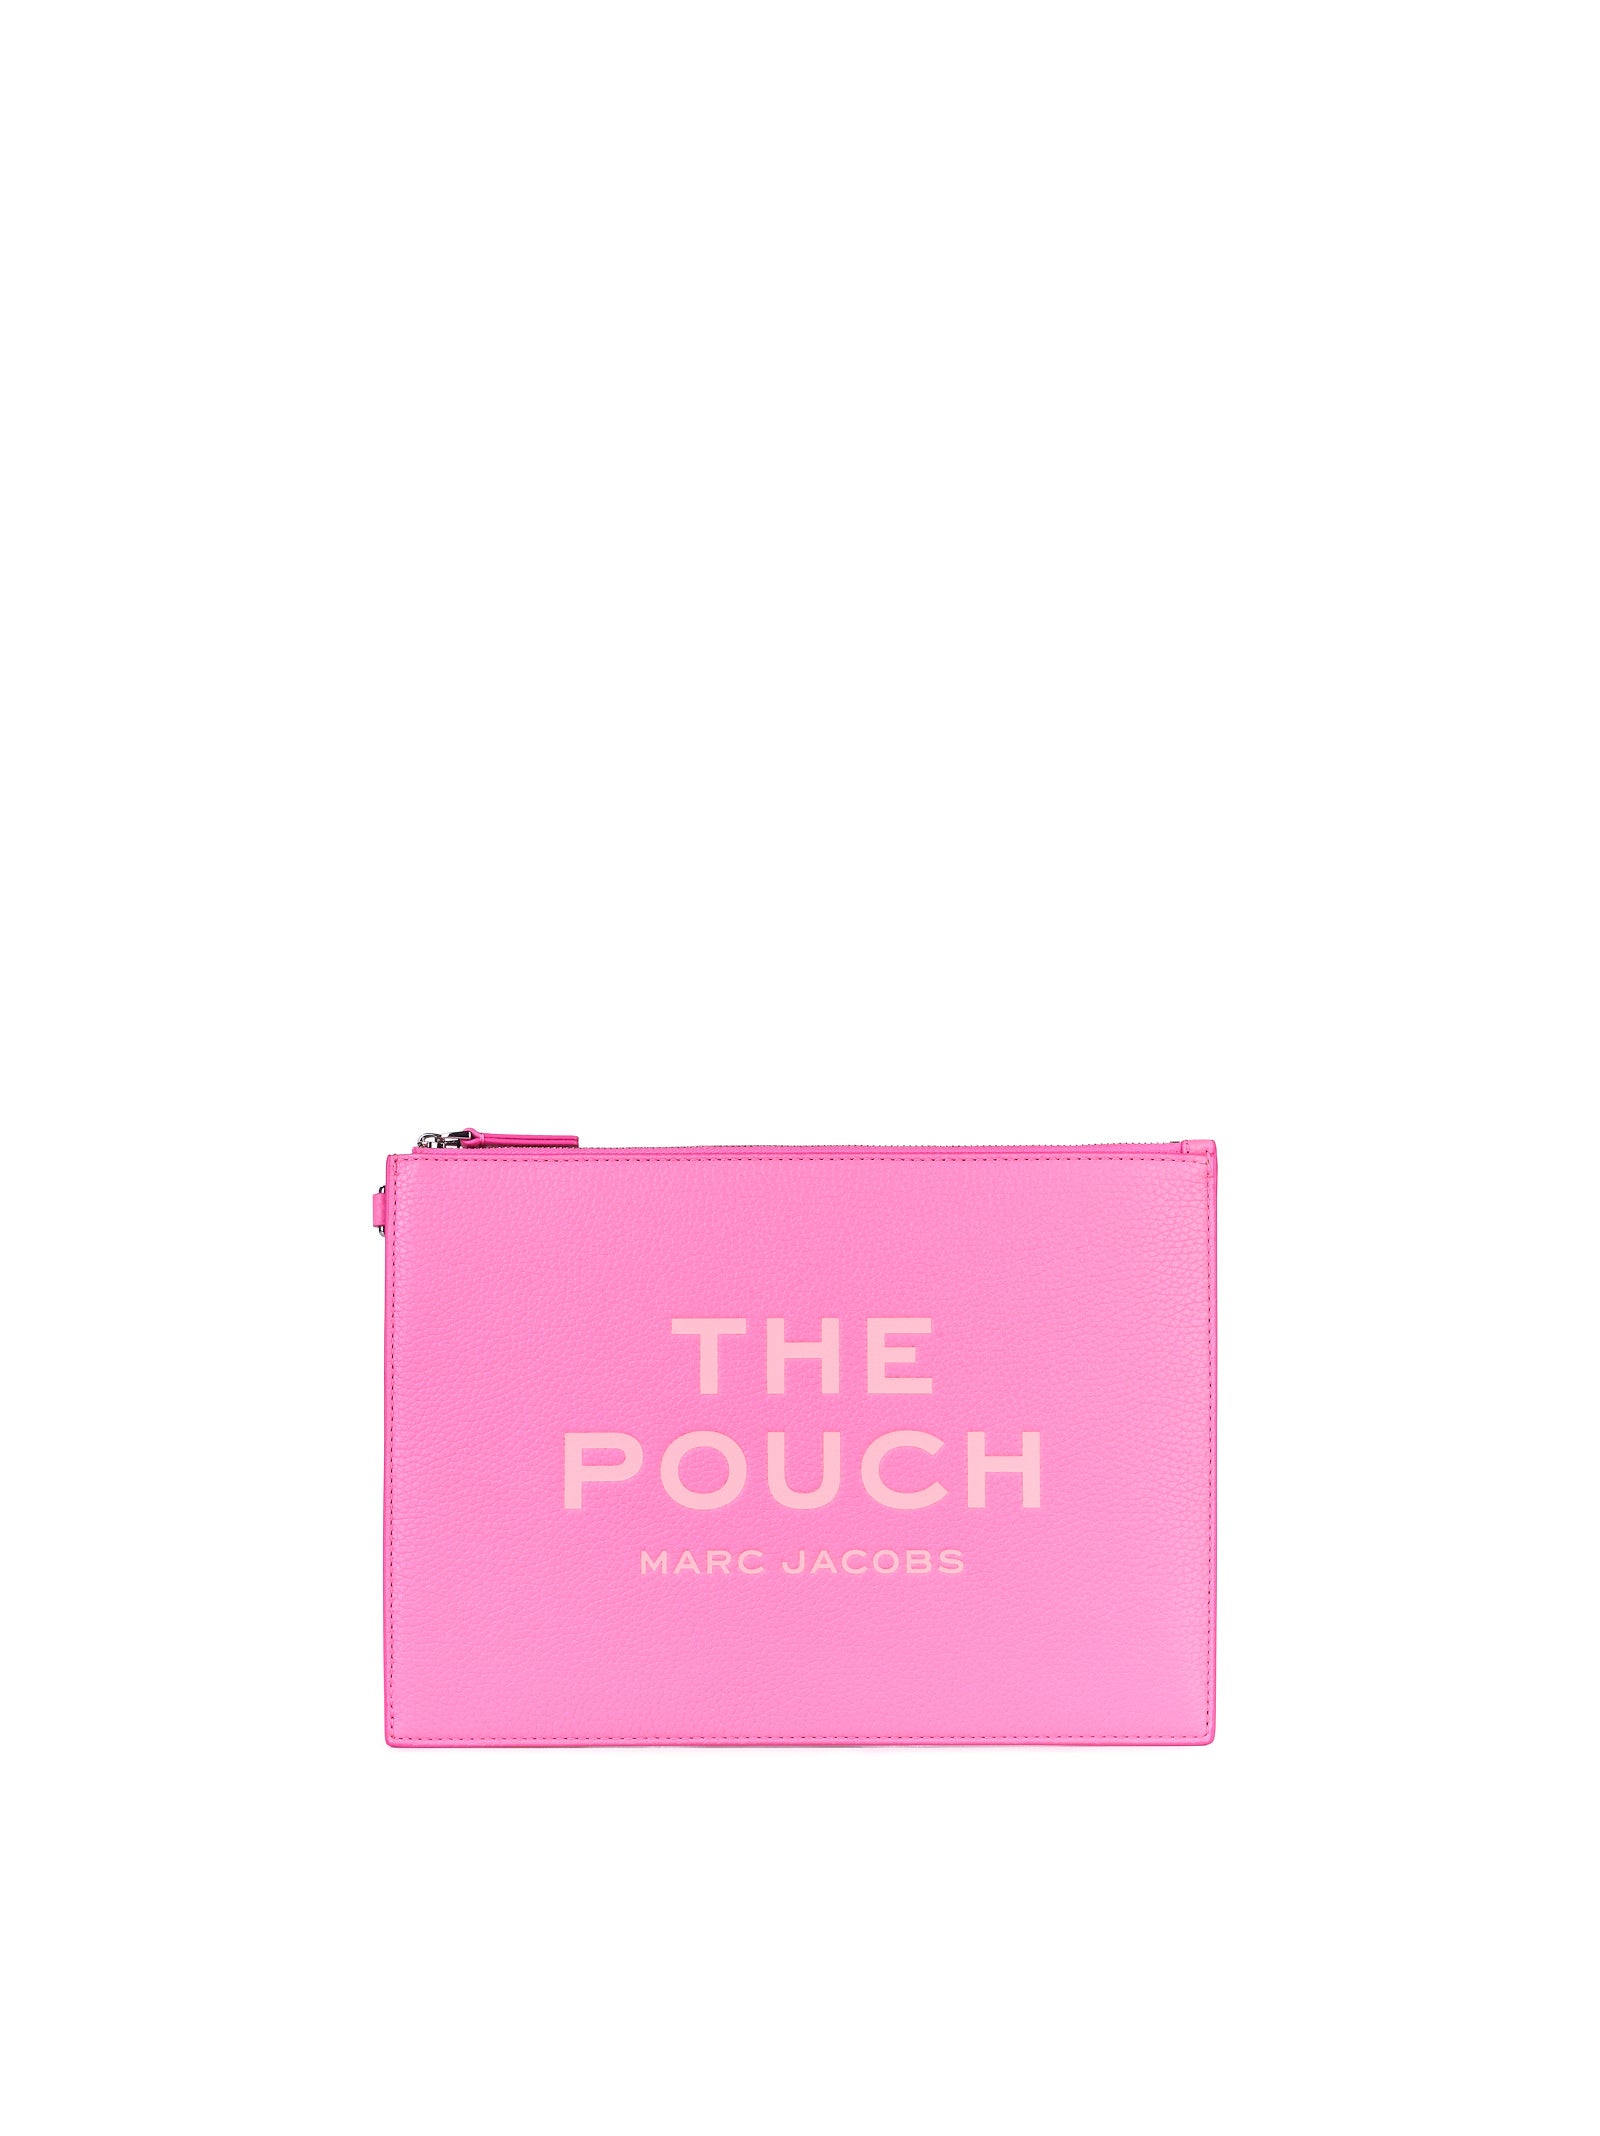 Pochette MARC JACOBS Large pouch
Petal pink